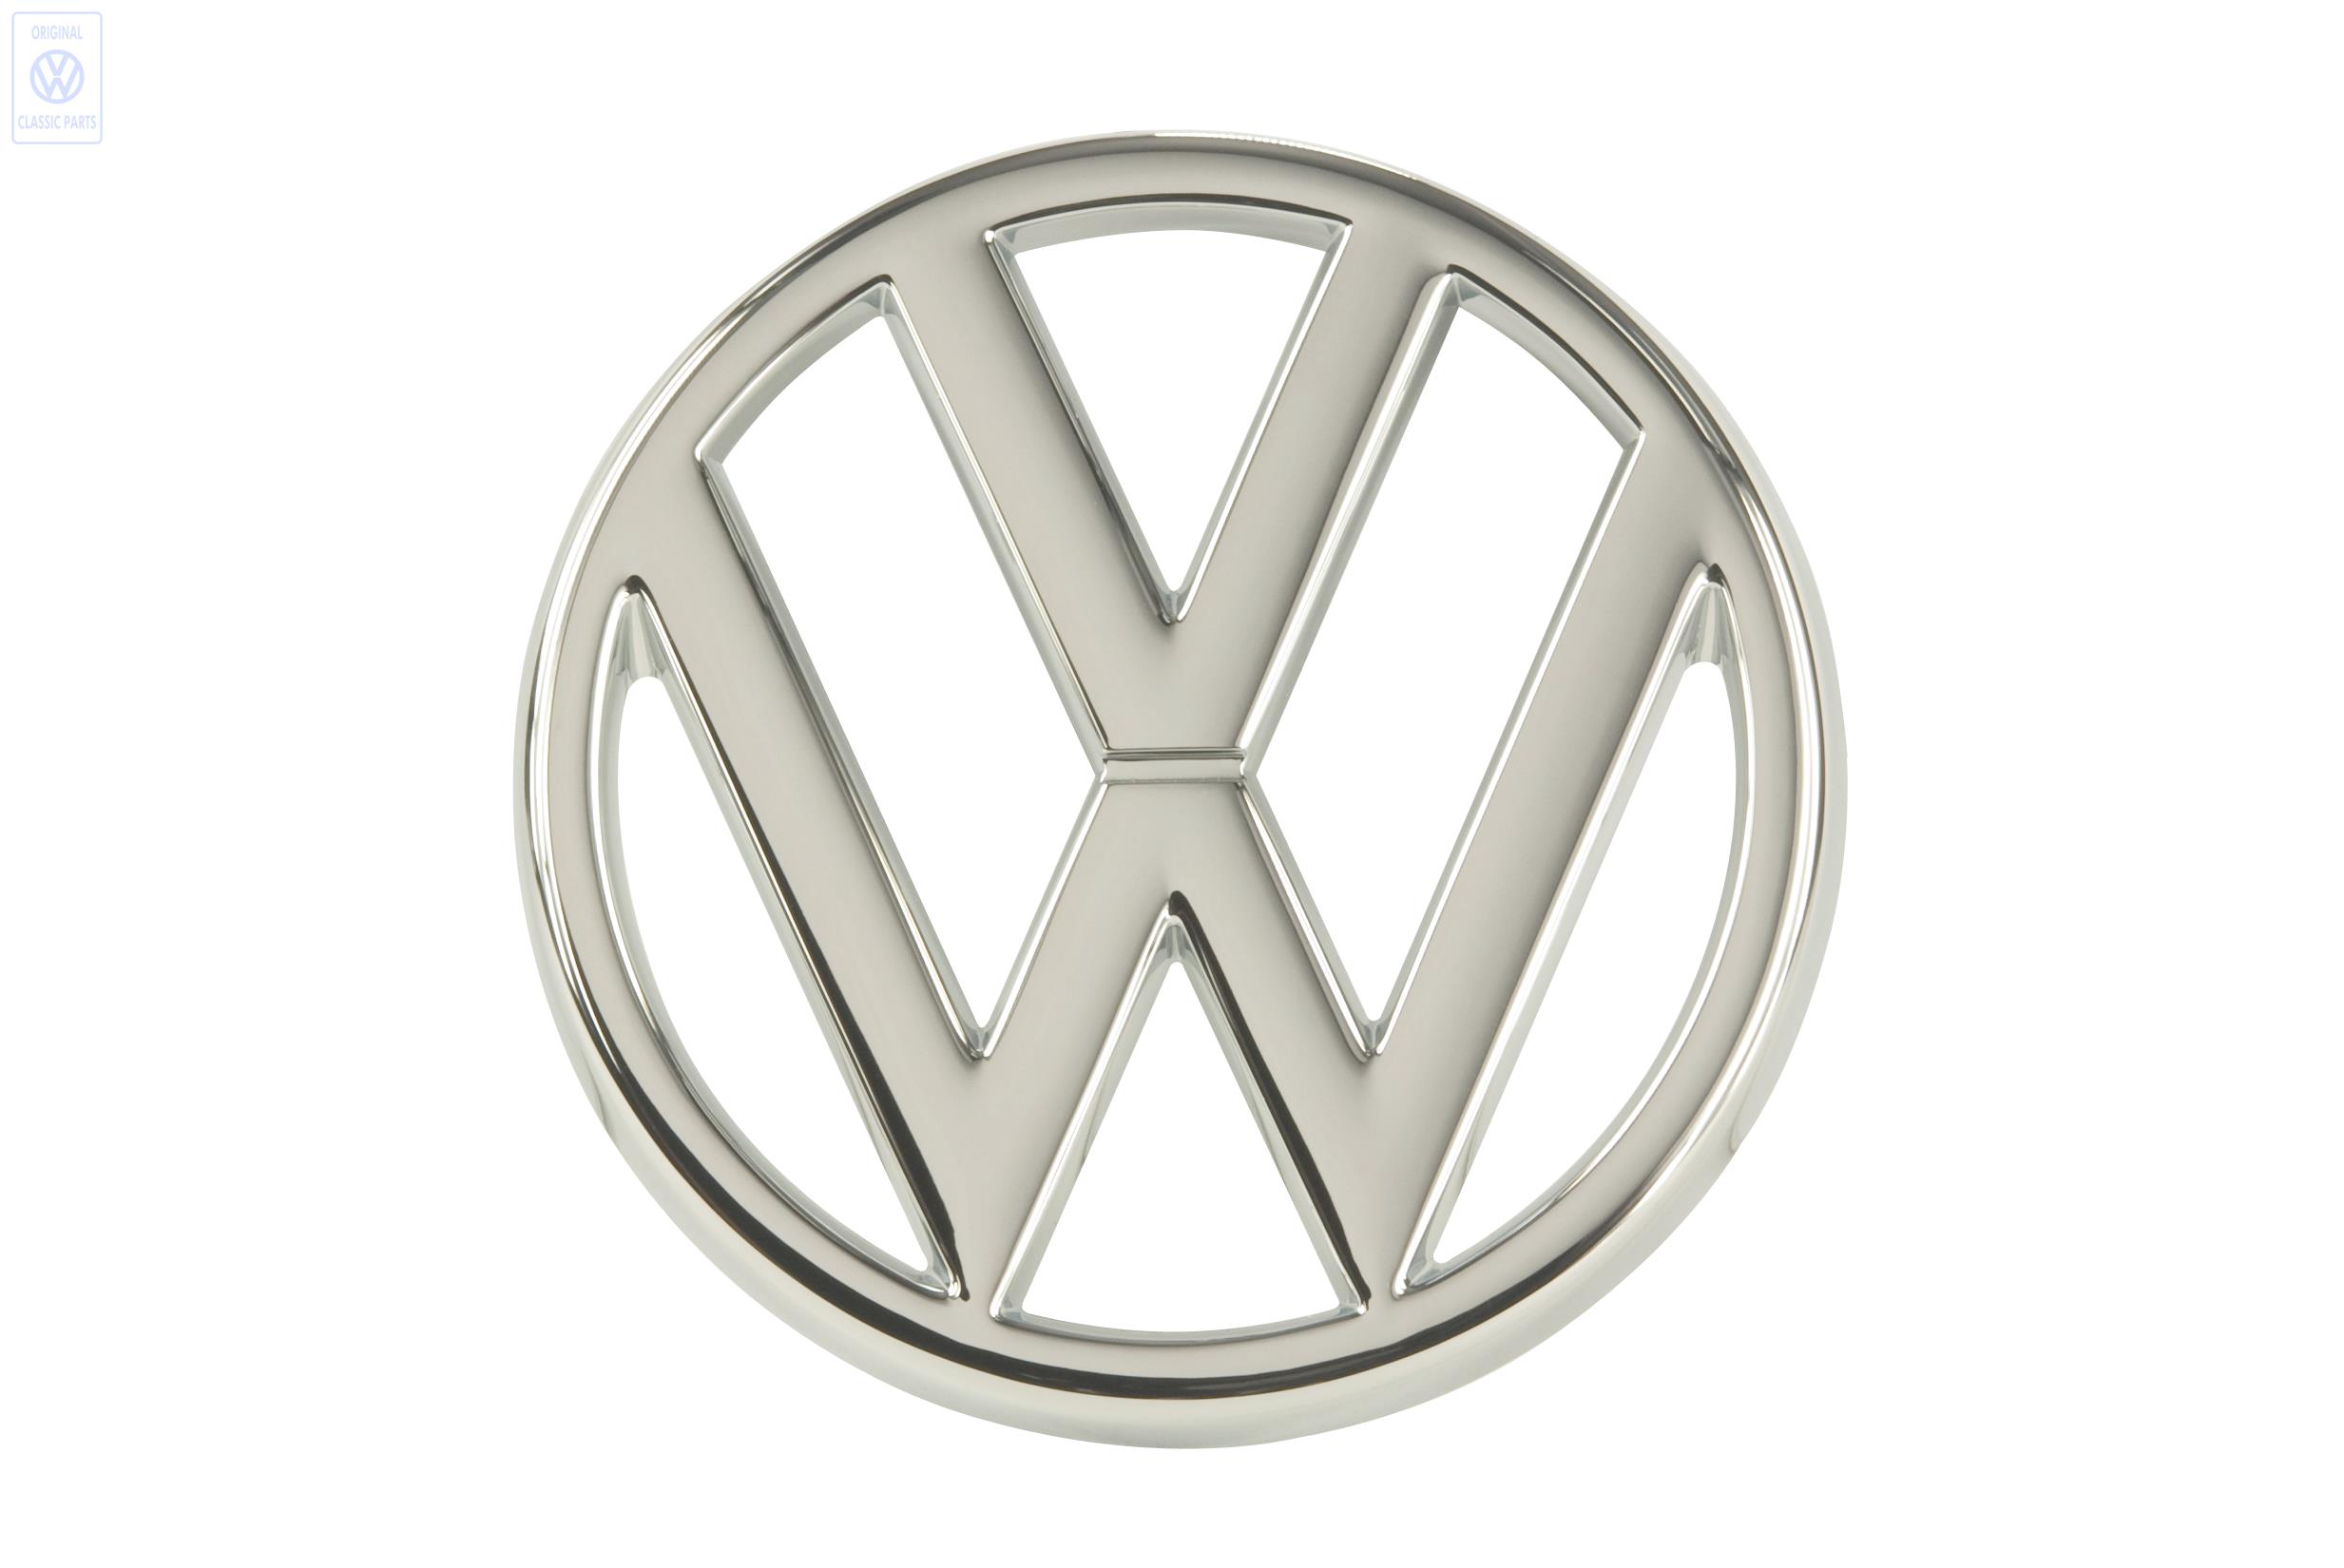  VW Emblem